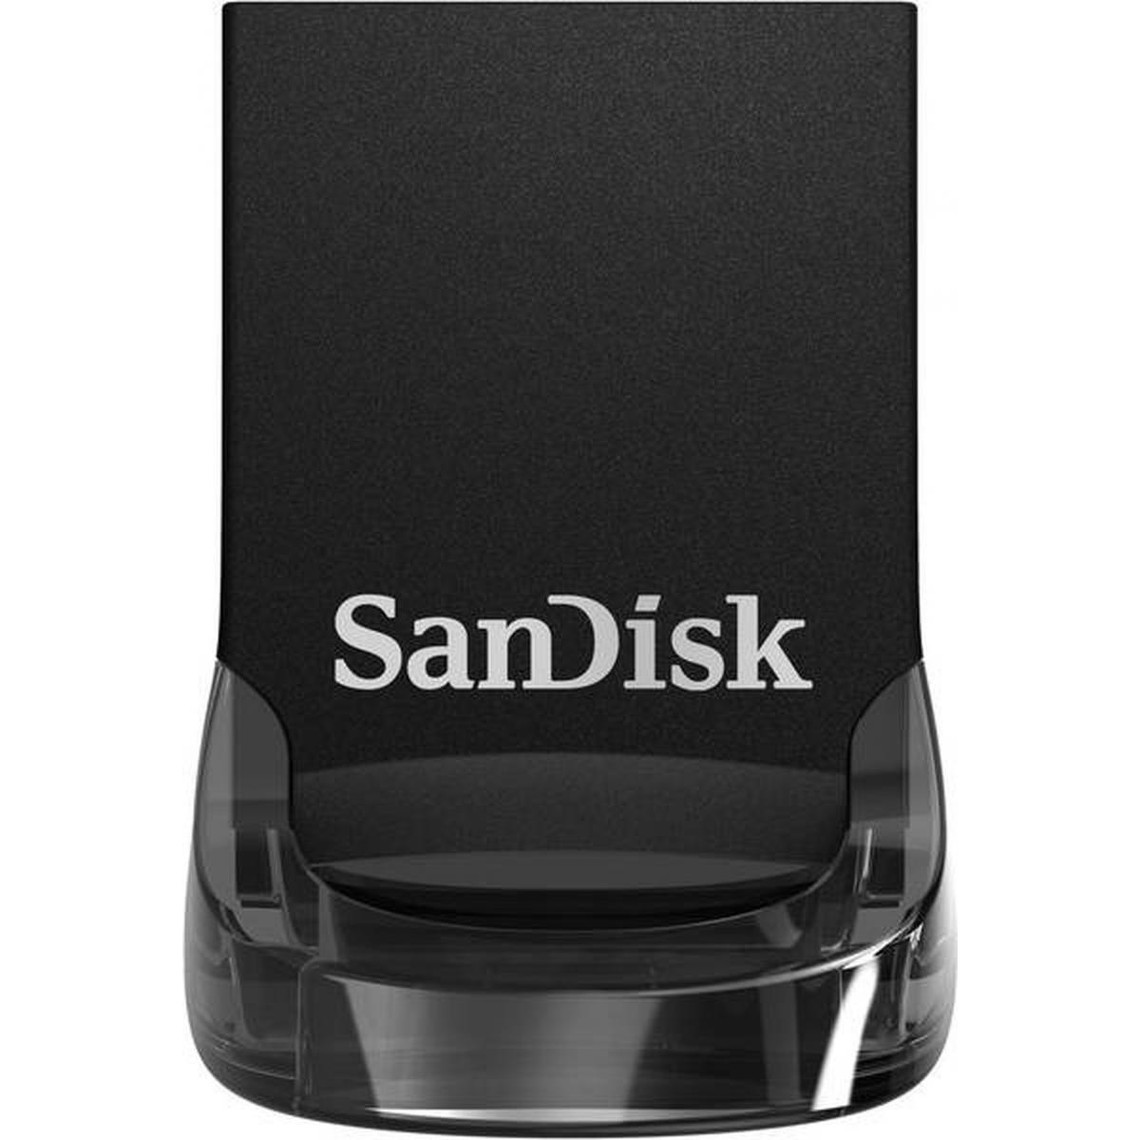 Sandisk Ultra Fit - 256 Go   Avantages Ultra Fit - 256 Go Capacité : 256 Go Interface : USB 3.1 Gen 1 Lecture : 130Mo/s Parfait pour une utilisation à long terme pour les autoradios et les ordinateurs portables Ajoutez de l'espace rapidement. Branchez-le simplement Un moyen simple d'ajouter du stockage haute vitesse supplémentaire à votre périphérique ! La clé USB 3.1 SanDisk Ultra Fit? offre des performances vous permettant de déplacer un film entier jusqu?à 15 x plus rapidement qu?avec des clés USB 2.0 standards. De plus, grâce à son design rationnel et compact, vous pouvez la brancher et la laisser connectée. Design «Plug-and-Stay » compact Ce lecteur flash compact est conçu en tant que stockage « plug-and-stay » pour les ordinateurs portables, tablettes, TV, consoles de jeu, systèmes audio de voitures, et plus encore. Branchez-le, et vous disposez immédiatement d'un stockage toujours disponible ! Performances USB 3.1 haute vitesse Transférez rapidement vos fichiers avec une vitesse de lecture de 130 Mo / s. Avec des vitesses d?écriture 15 fois plus rapides que les lecteurs USB 2.0 standards1, vous pouvez transférer un film complet sur votre lecteur en moins de 30 secondes. Le logiciel SanDisk SecureAccess® protège votre confidentialité Créez un dossier privé sur votre lecteur à l'aide du logiciel SanDisk SecureAccess. Ce logiciel de chiffrement AES 128 bits rend aisée la protection par mot de passe des fichiers critiques. Glissez-déposez vos fichiers dans le coffre, et ils seront cryptés. Récupération facile des fichiers avec le logiciel RescuePRO® Deluxe La clé est livrée avec un téléchargement gratuit du logiciel de récupération de données RescuePRO Deluxe. Ce logiciel facilite la récupération des fichiers qui ont été effacés par inadvertance (téléchargement requis). Compatible avec les ports USB 3.0 et 2.0 Le lecteur flash SanDisk Ultra Fit USB 3.1 est rétrocompatible, vous permettant d'utiliser aussi bien un port USB 2.0 que 3.0.  